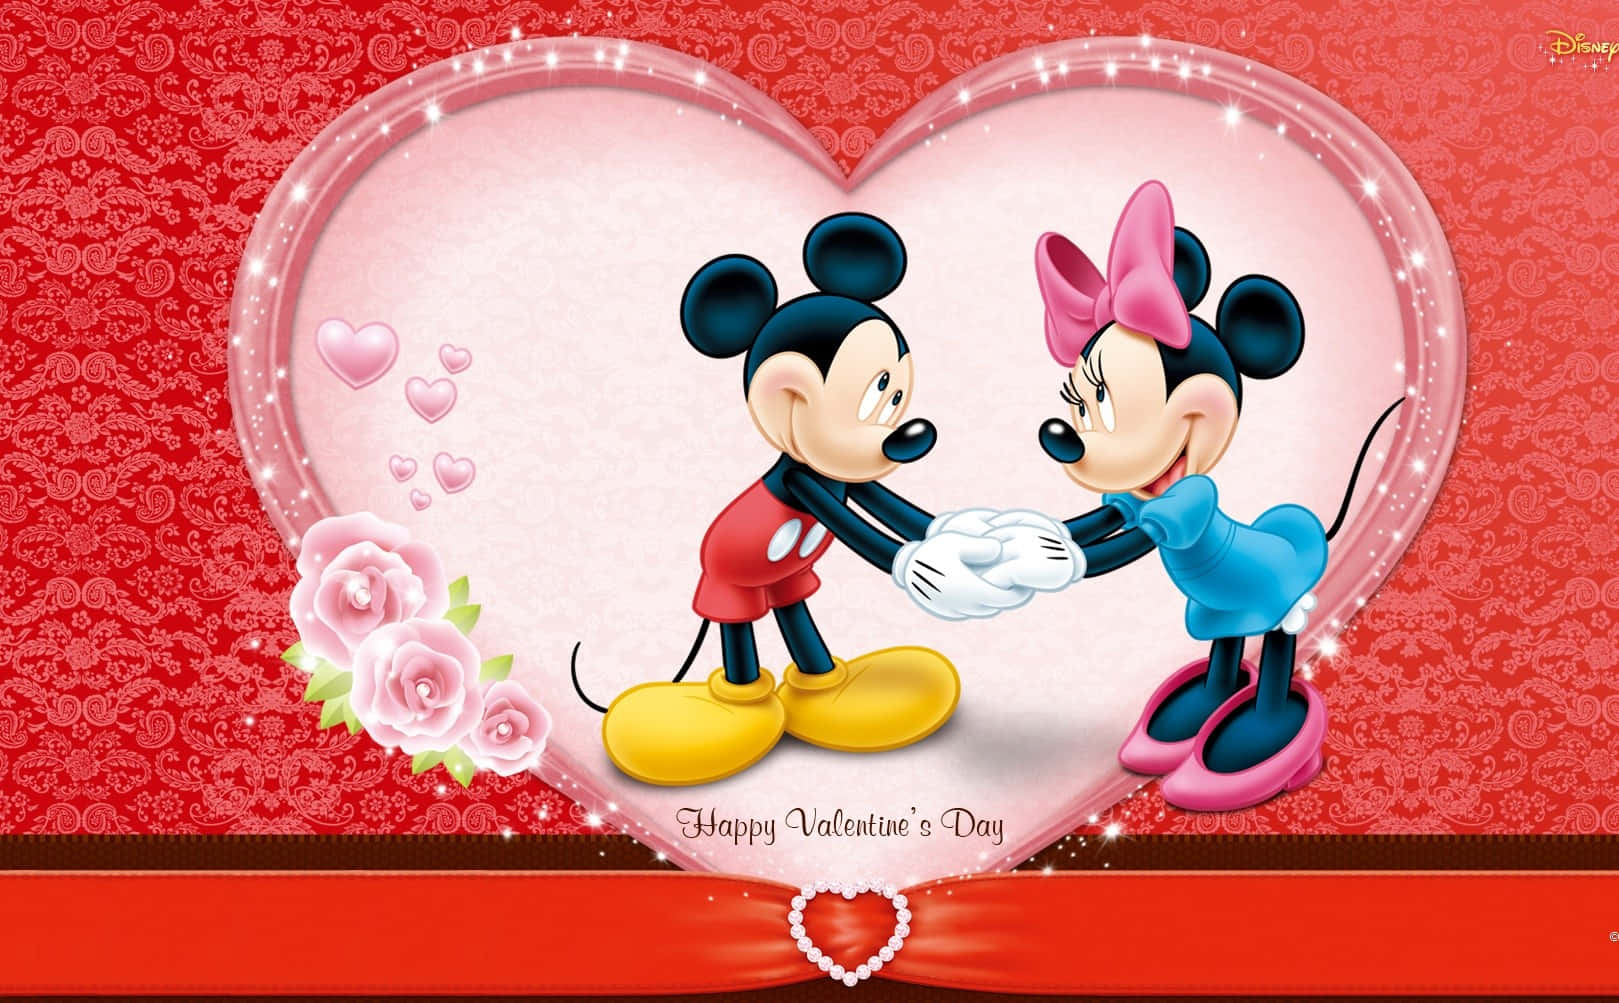 Fondode Pantalla De Mickey Mouse Y Minnie Mouse Para El Día De San Valentín.